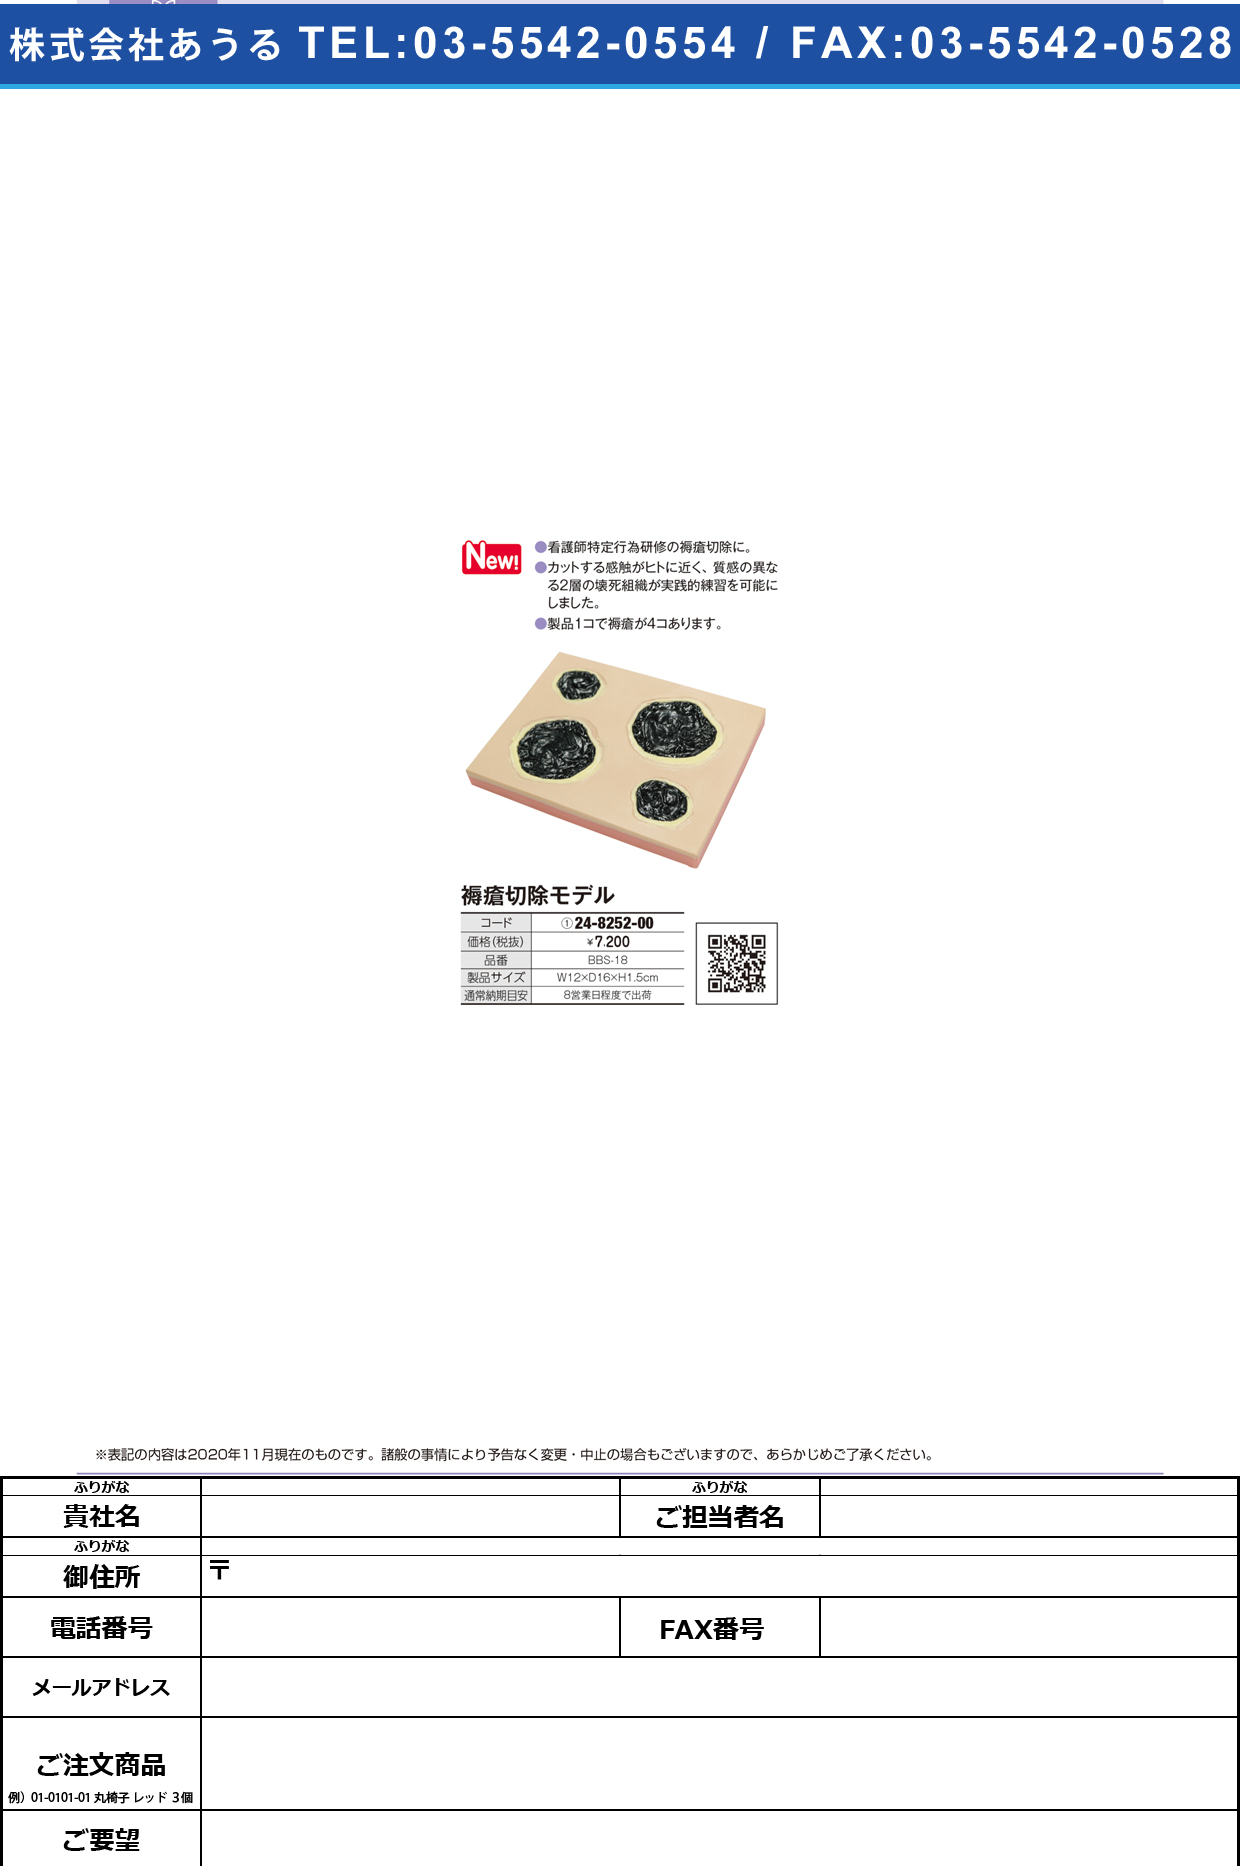 褥瘡切除モデル BBS-18BBS-18(24-8252-00)【レジーナ】(販売単位:1)